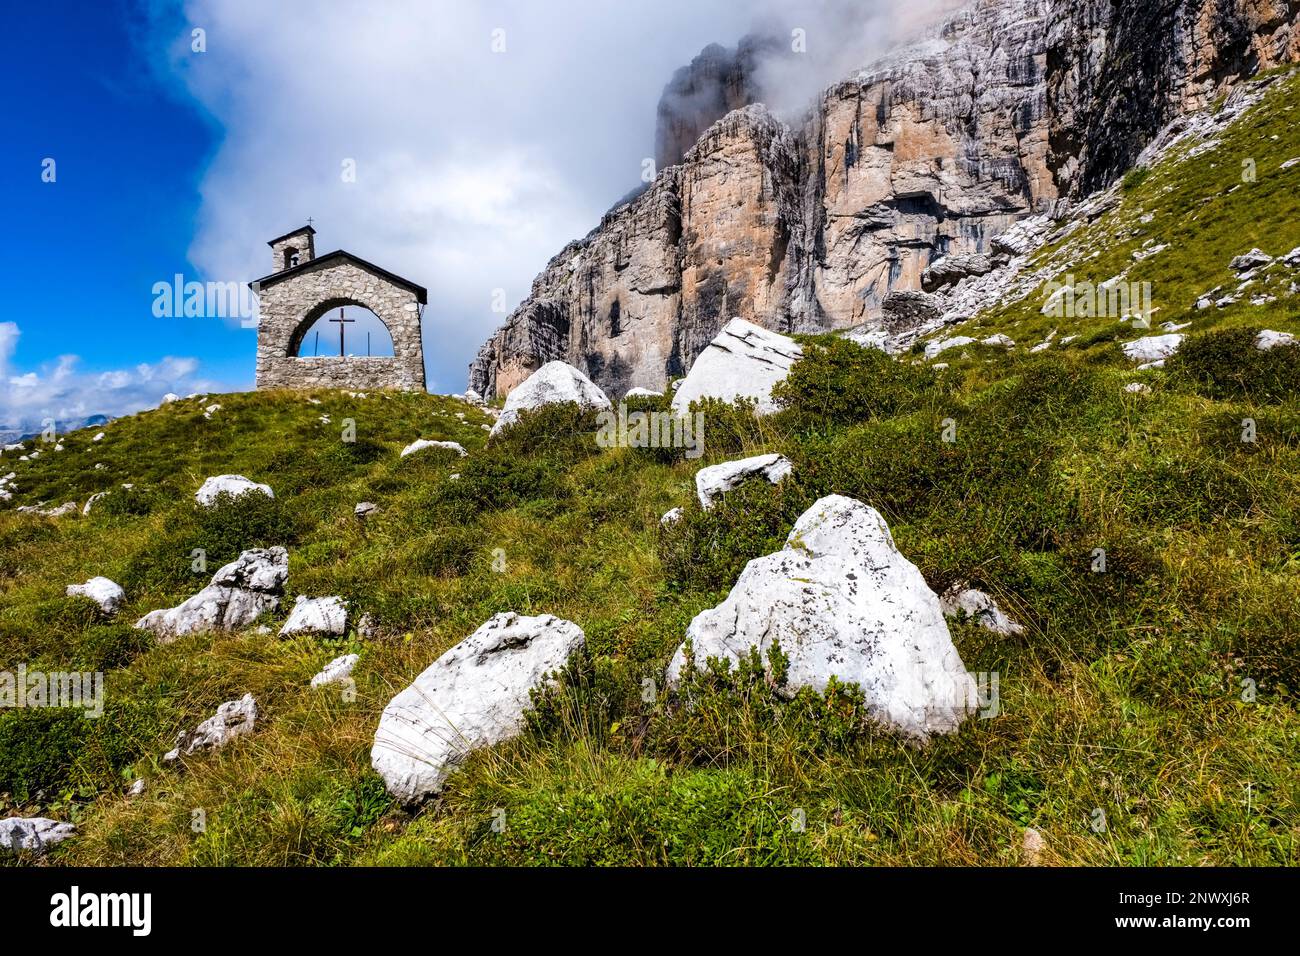 La piccola cappella vicino al rifugio Maria e Alberto al Brentei nelle Dolomiti di Brenta, che circonda in lontananza scogliere rocciose. Foto Stock